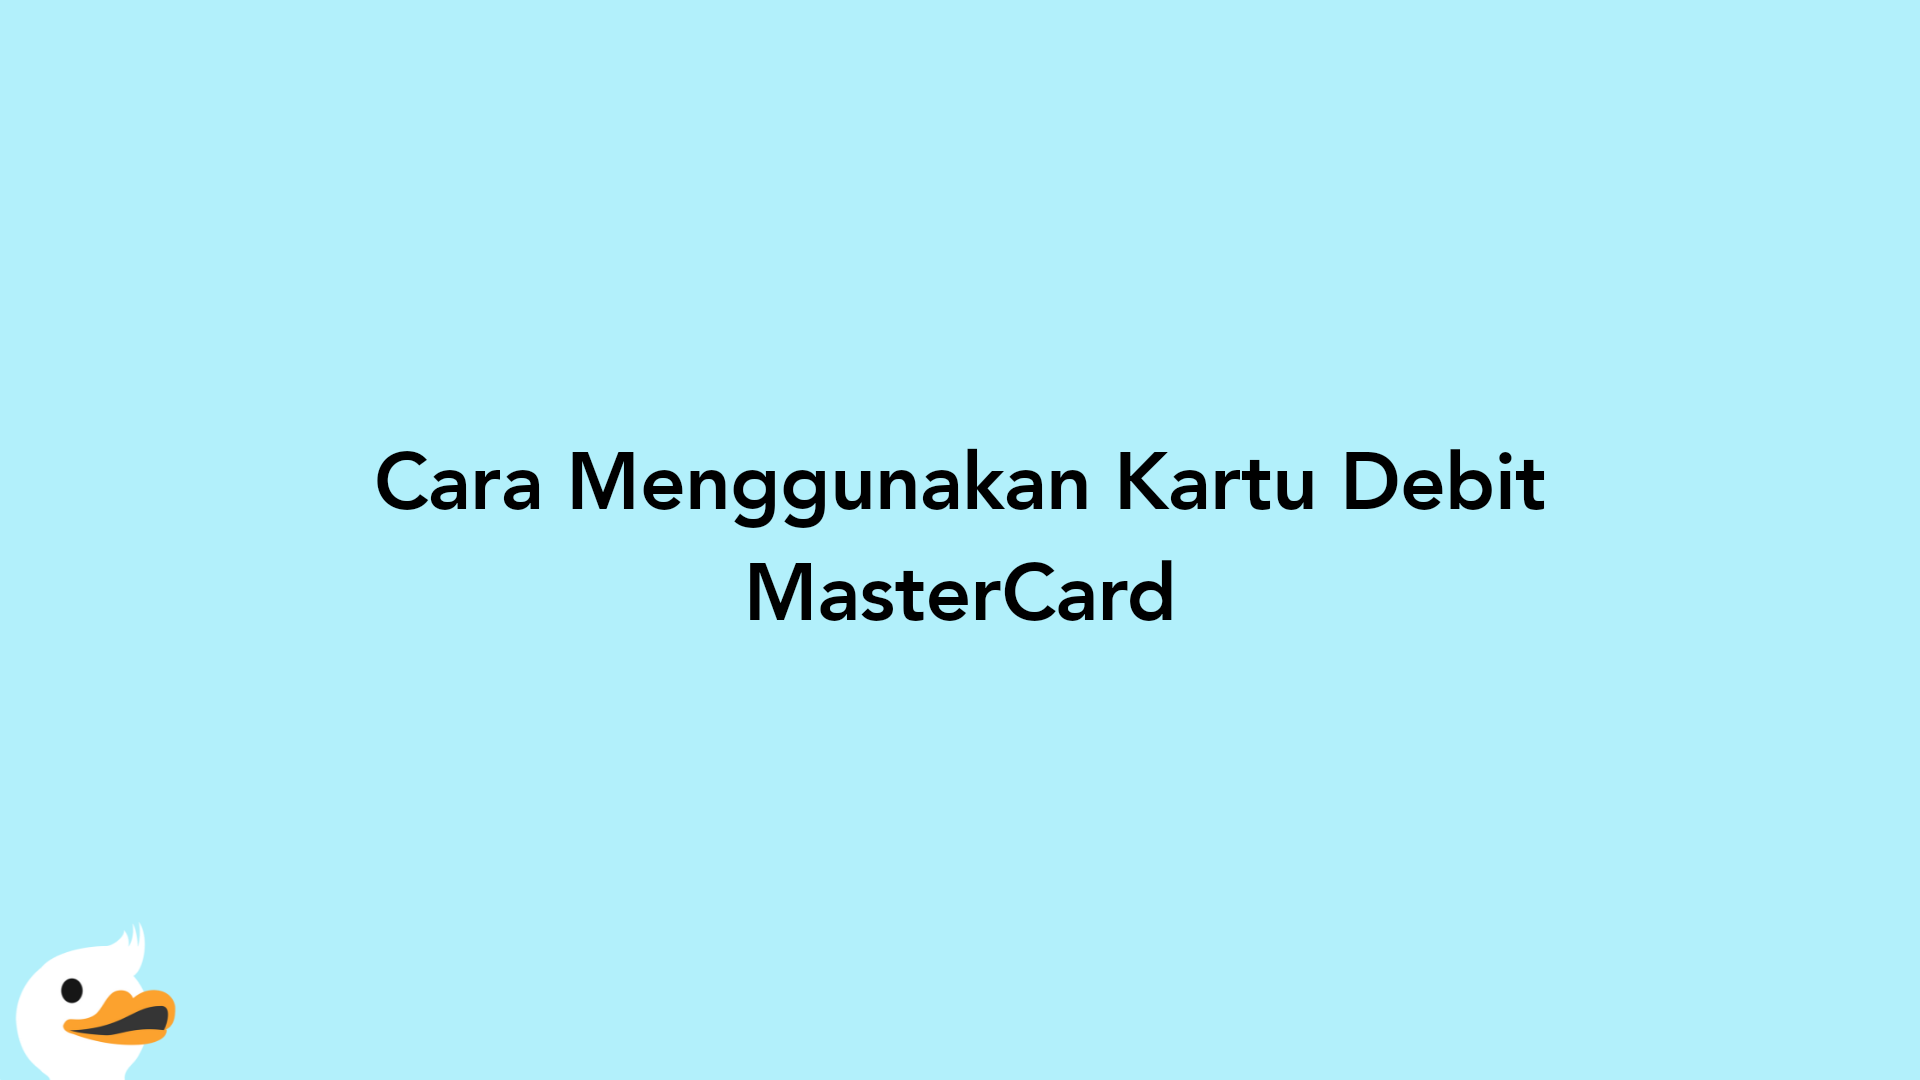 Cara Menggunakan Kartu Debit MasterCard